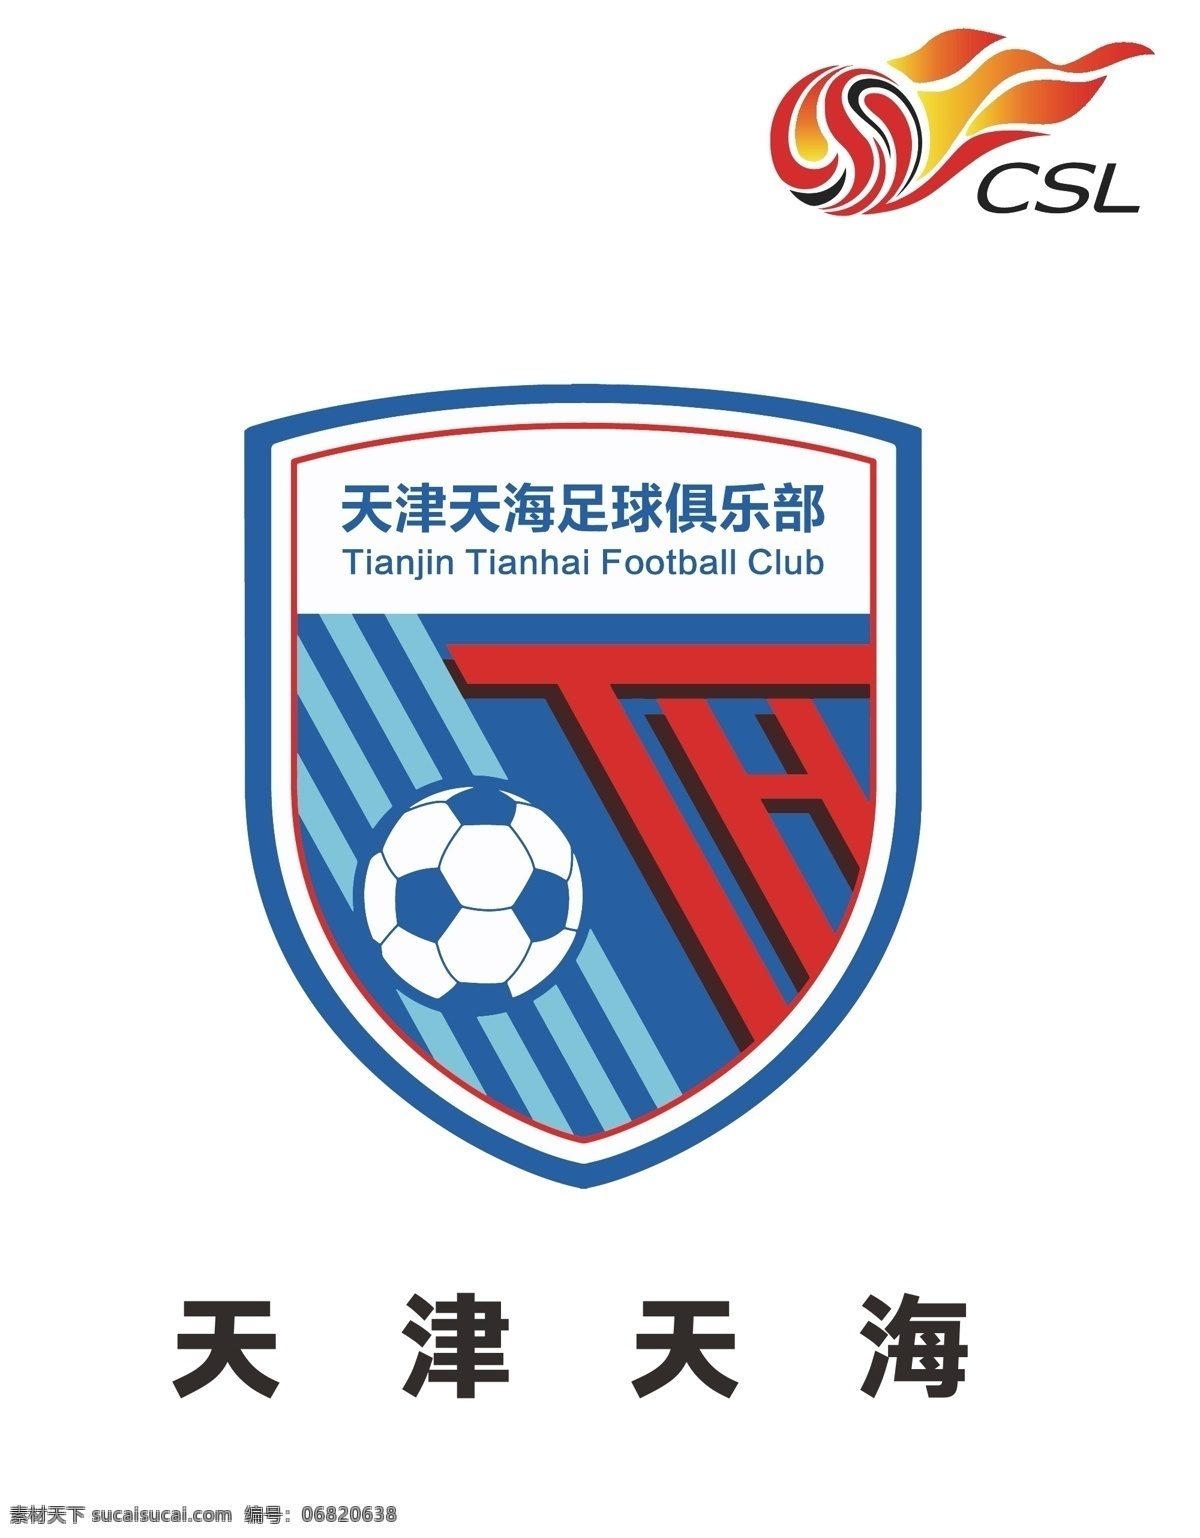 天津 天海 logo 中国超级联赛 天津天海 足球俱乐部 中超 健身 健康 健体 体育 运动 logo设计